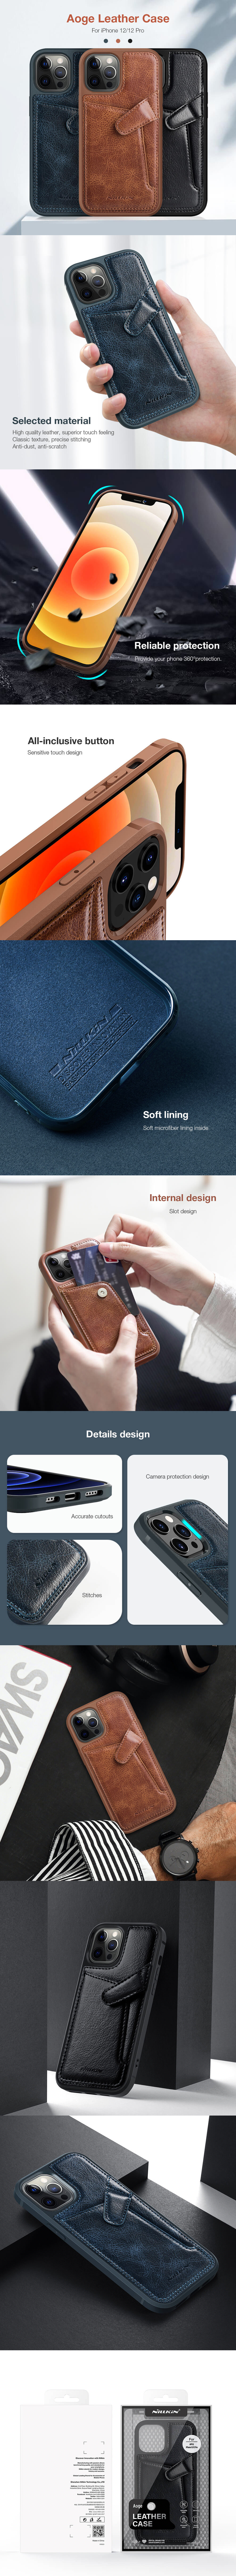  کاور اورجینال نیلکین مدل Aoge Leather Case مناسب برای گوشی موبایل آیفون 12 و آیفون 12 پرو